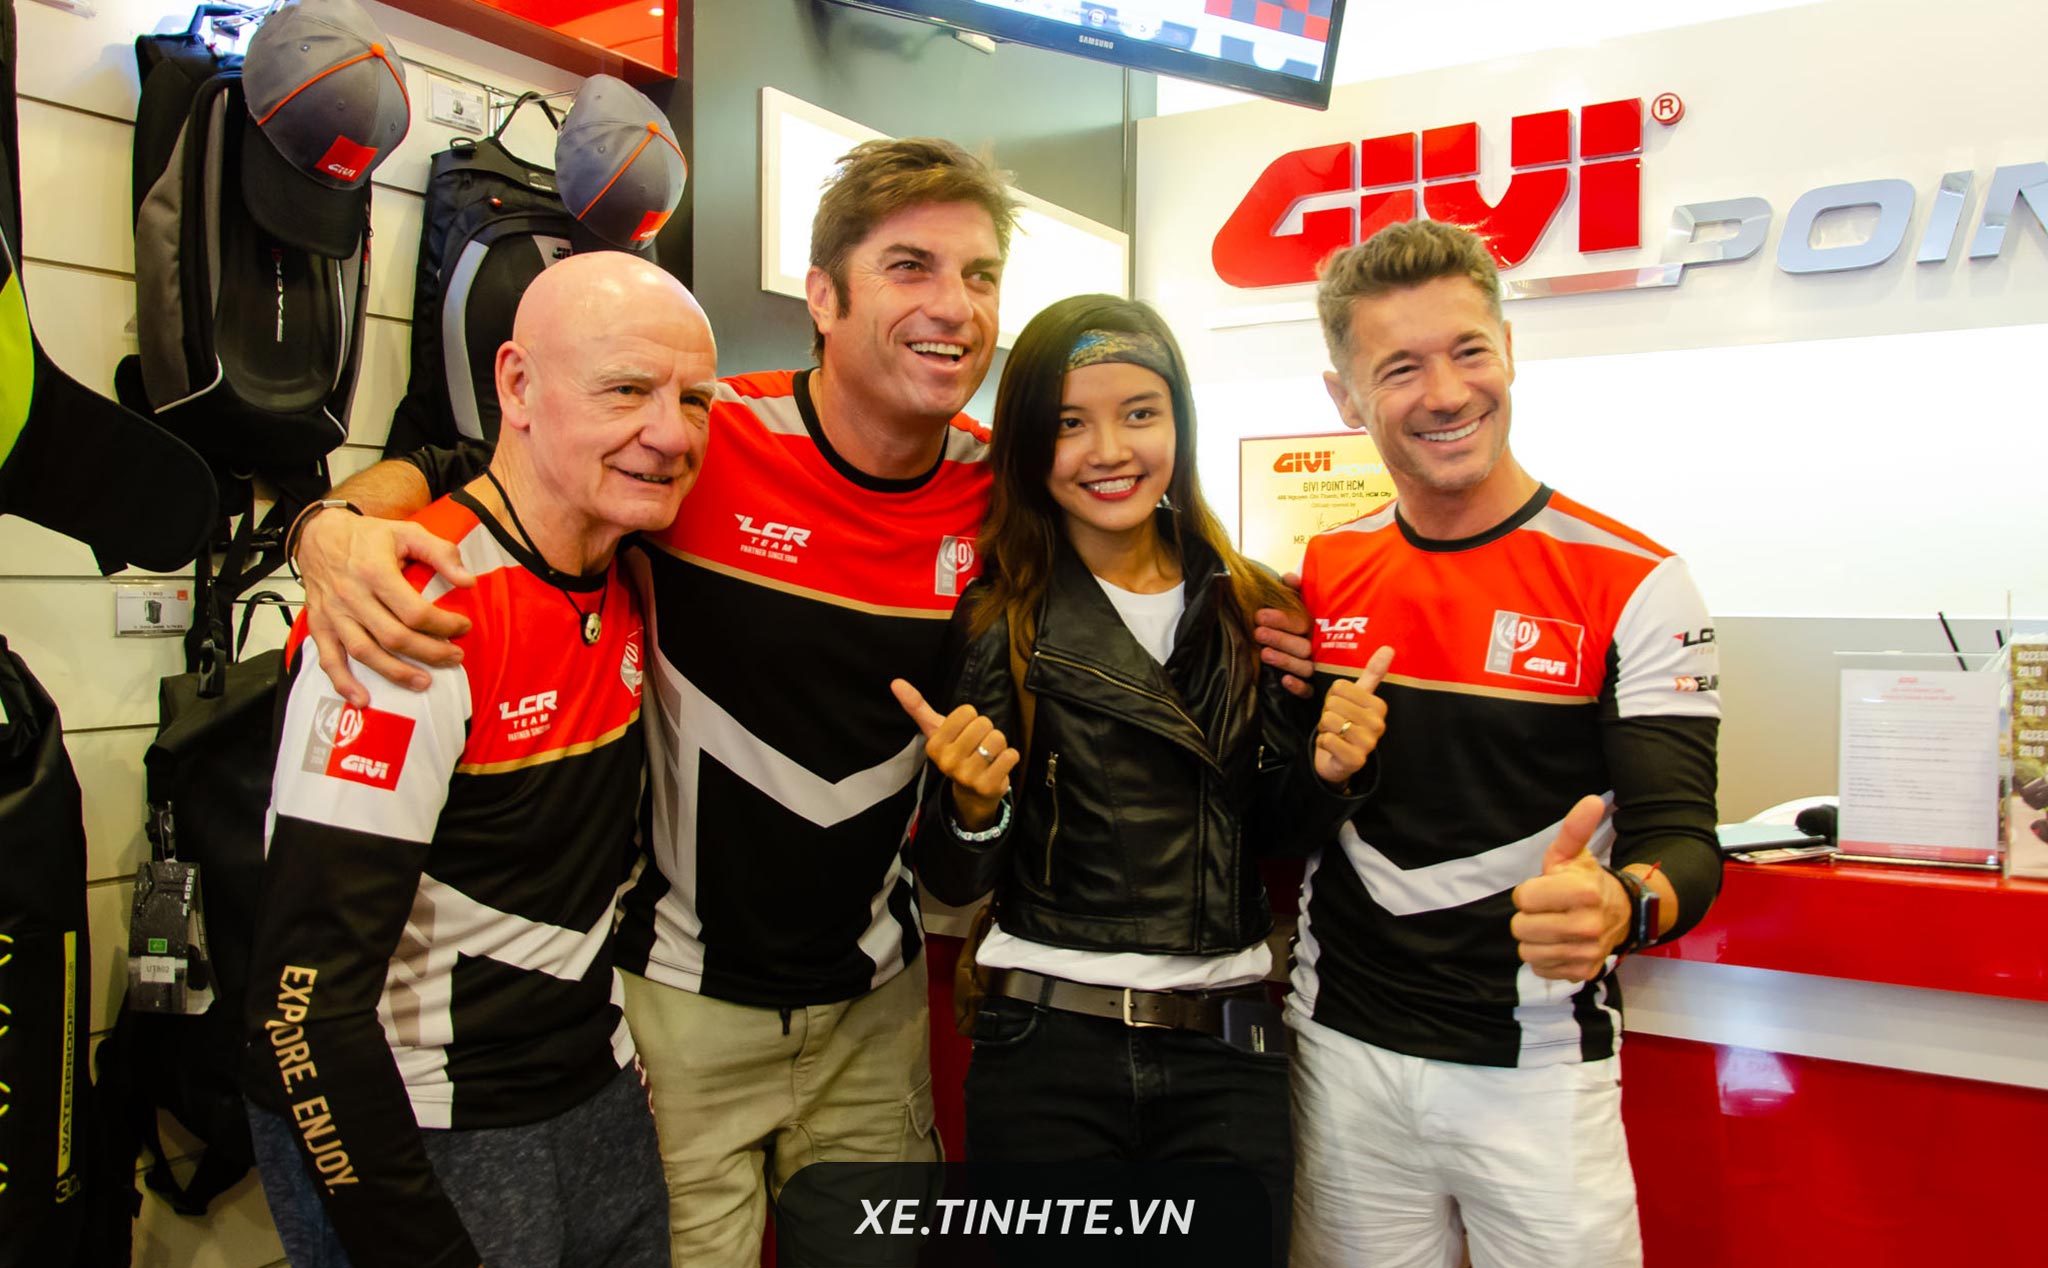 [Hình ảnh] Đội đua MotoGP LCR Team đến Việt Nam, kỷ niệm 20 năm hợp tác với GIVI